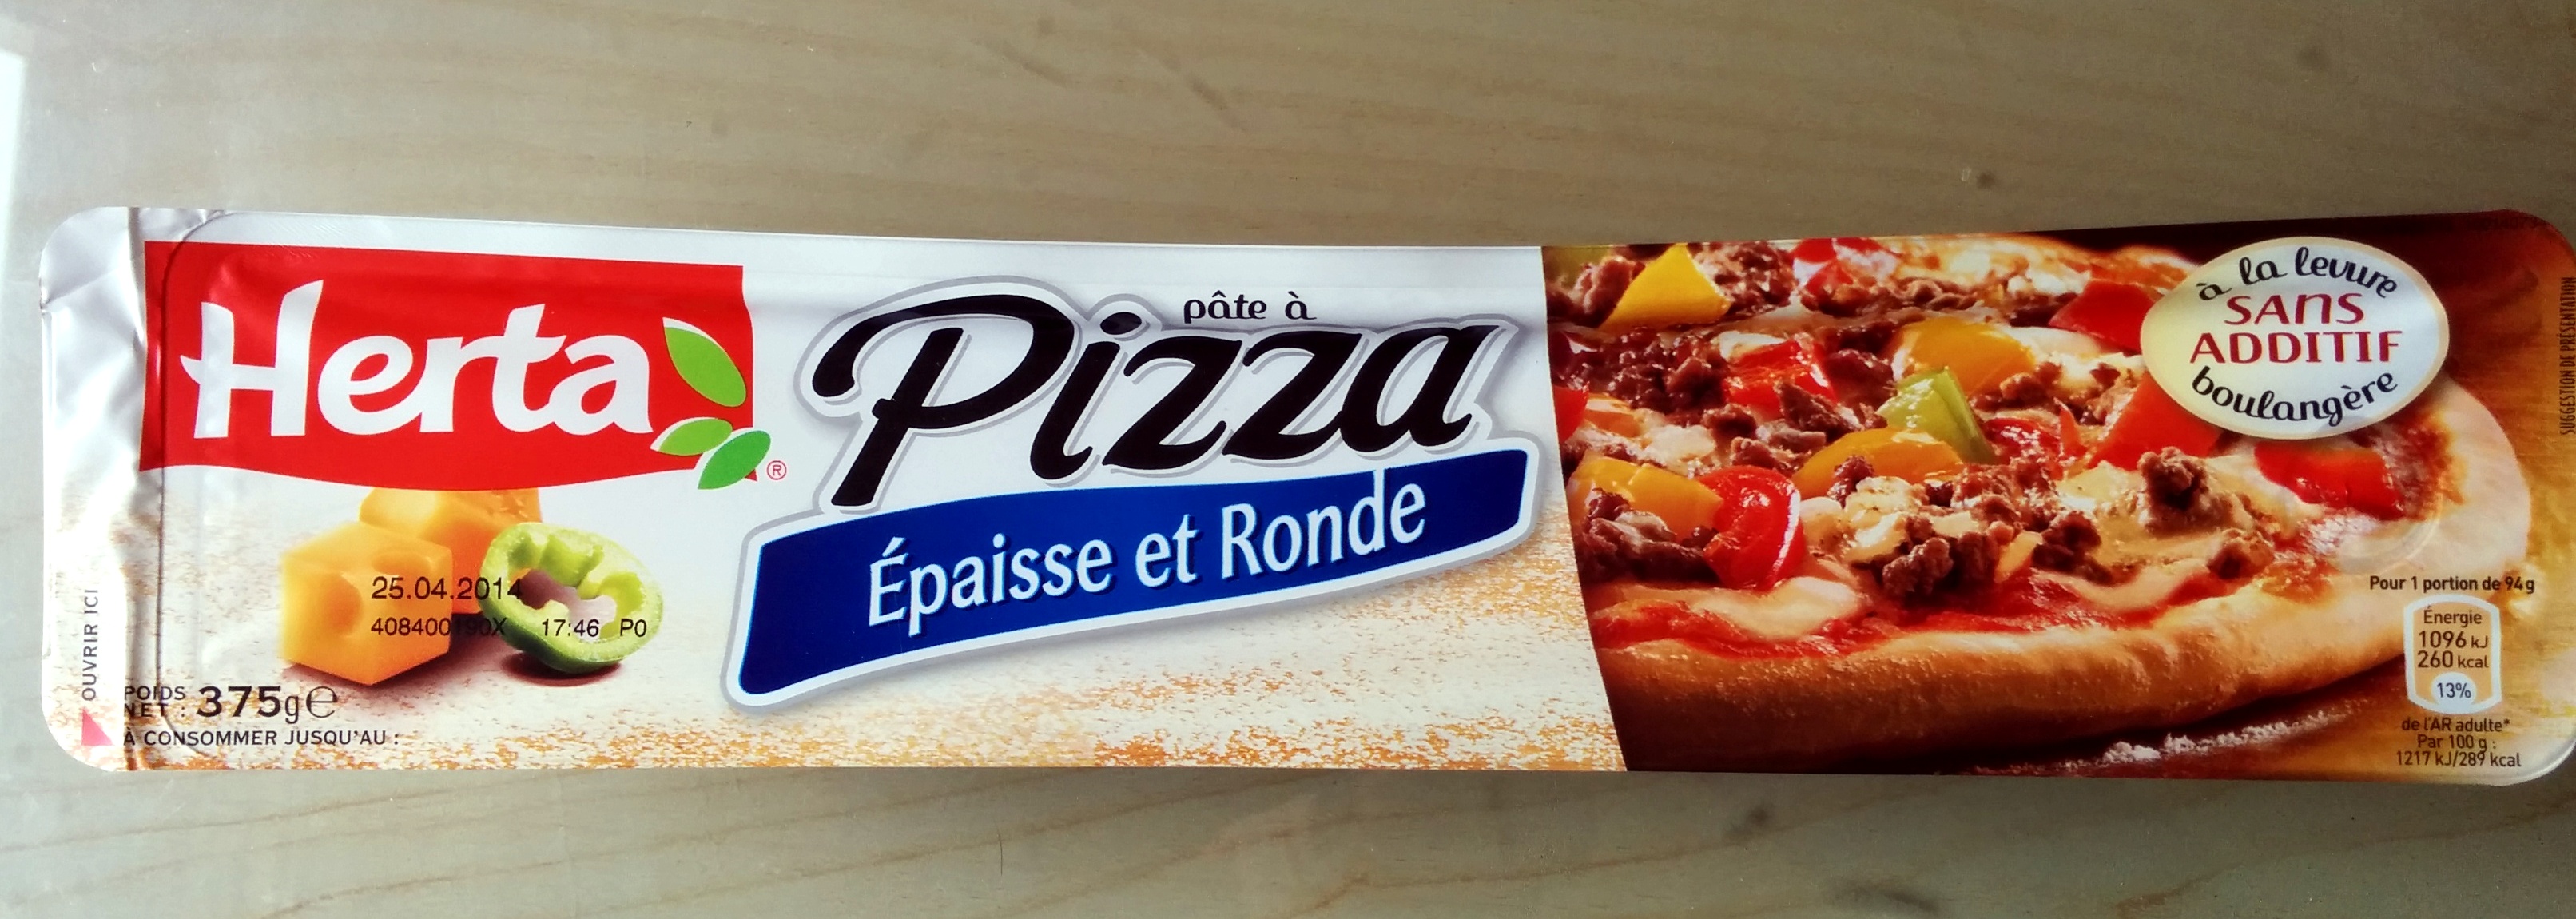 Pâte à pizza Epaisse et Ronde - Producto - fr